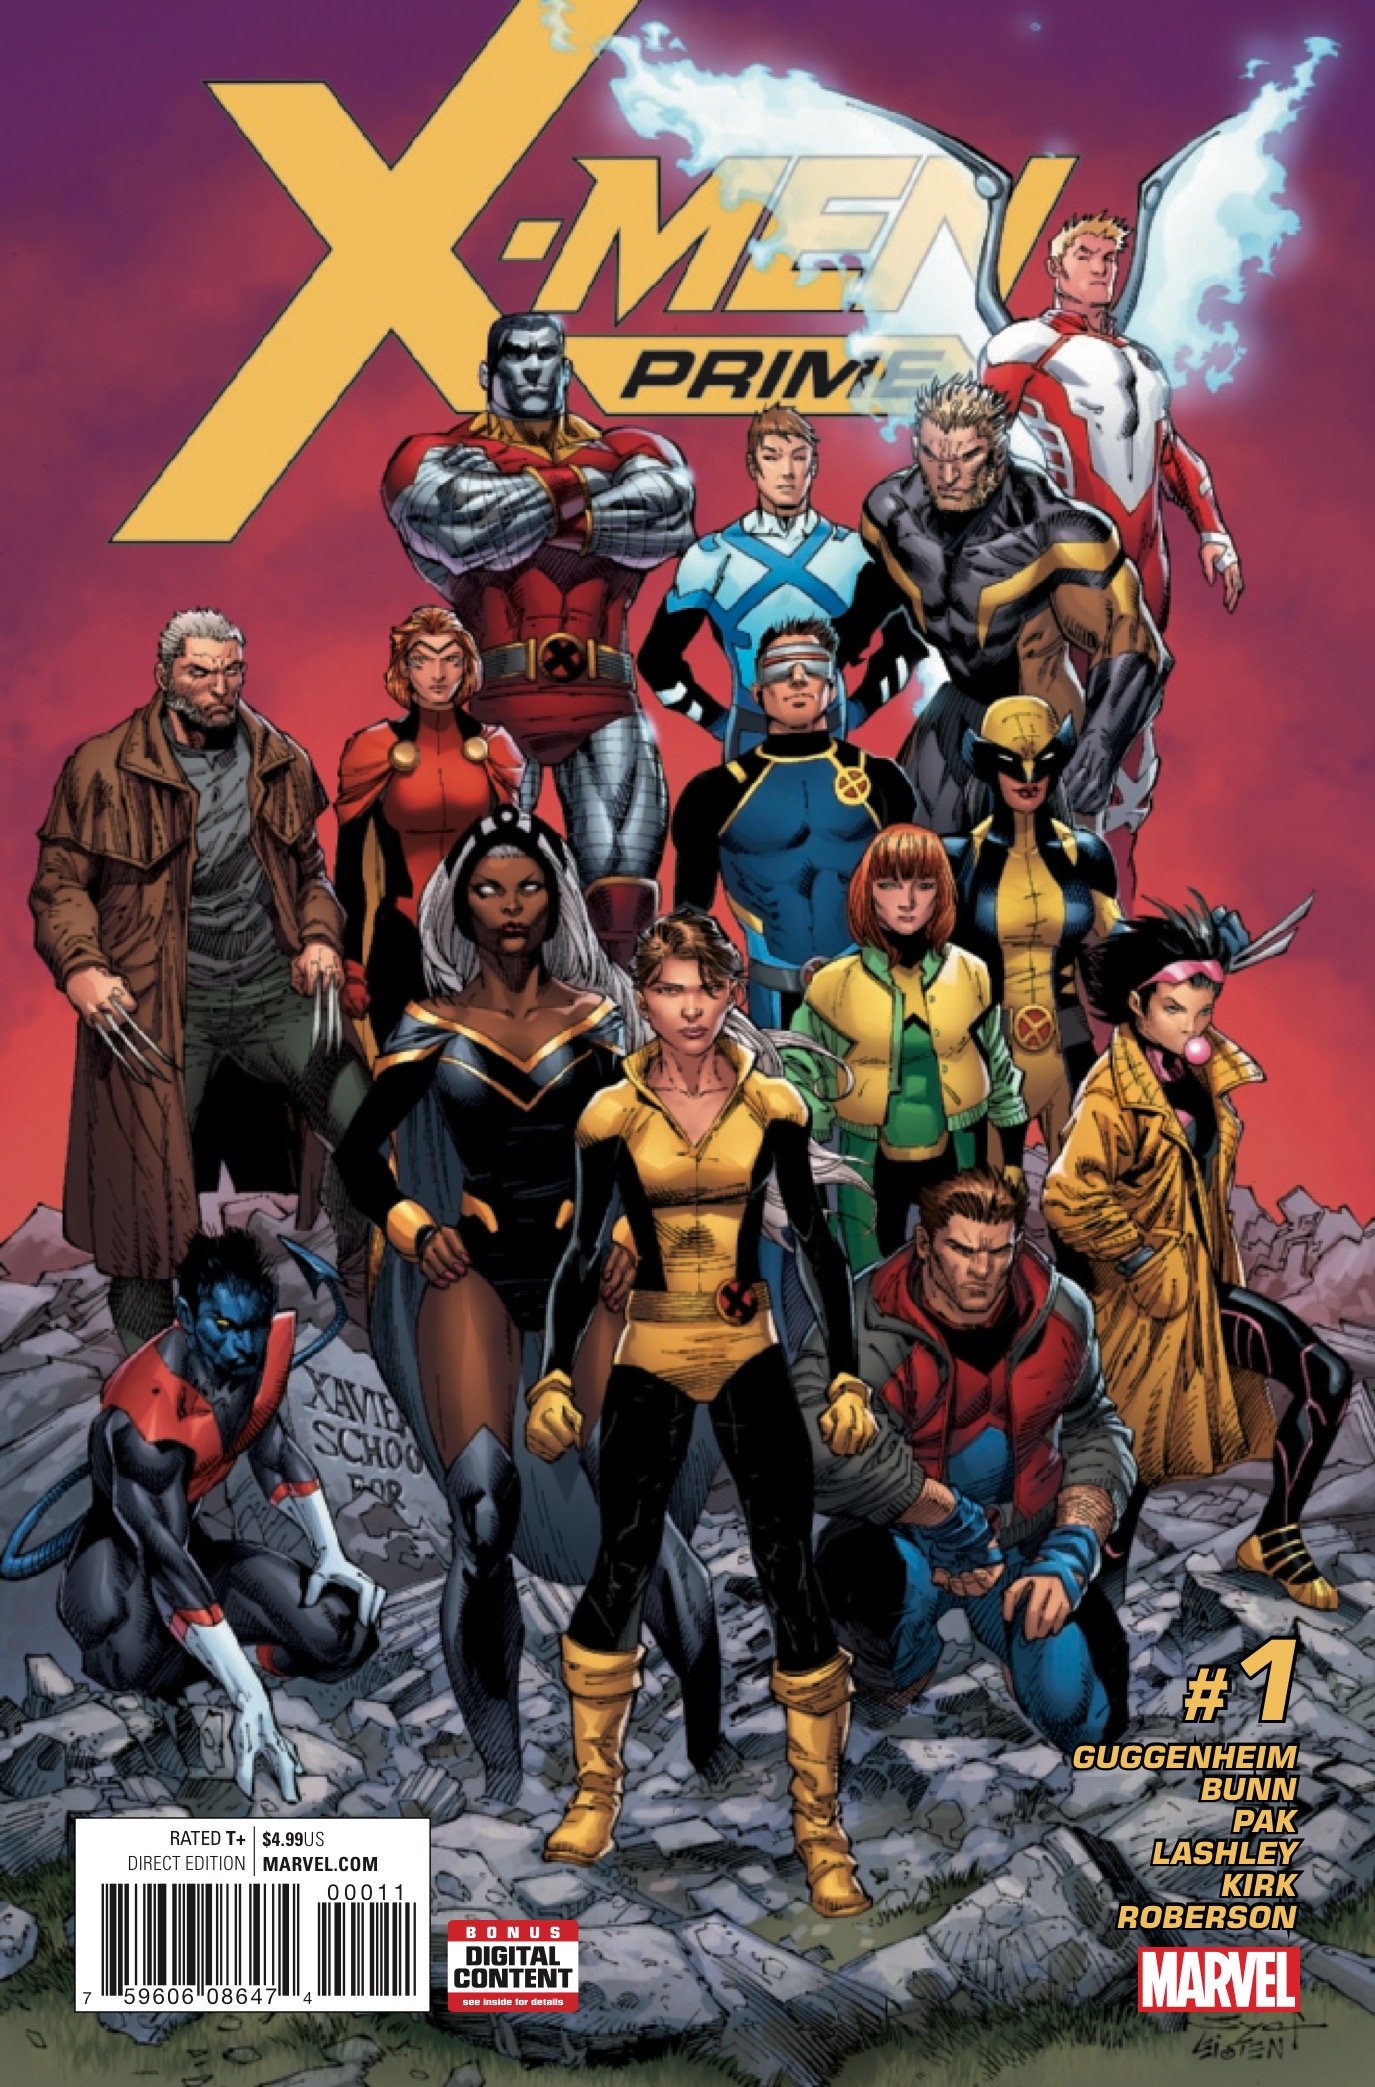 Marvel Preview: X-Men Prime #1